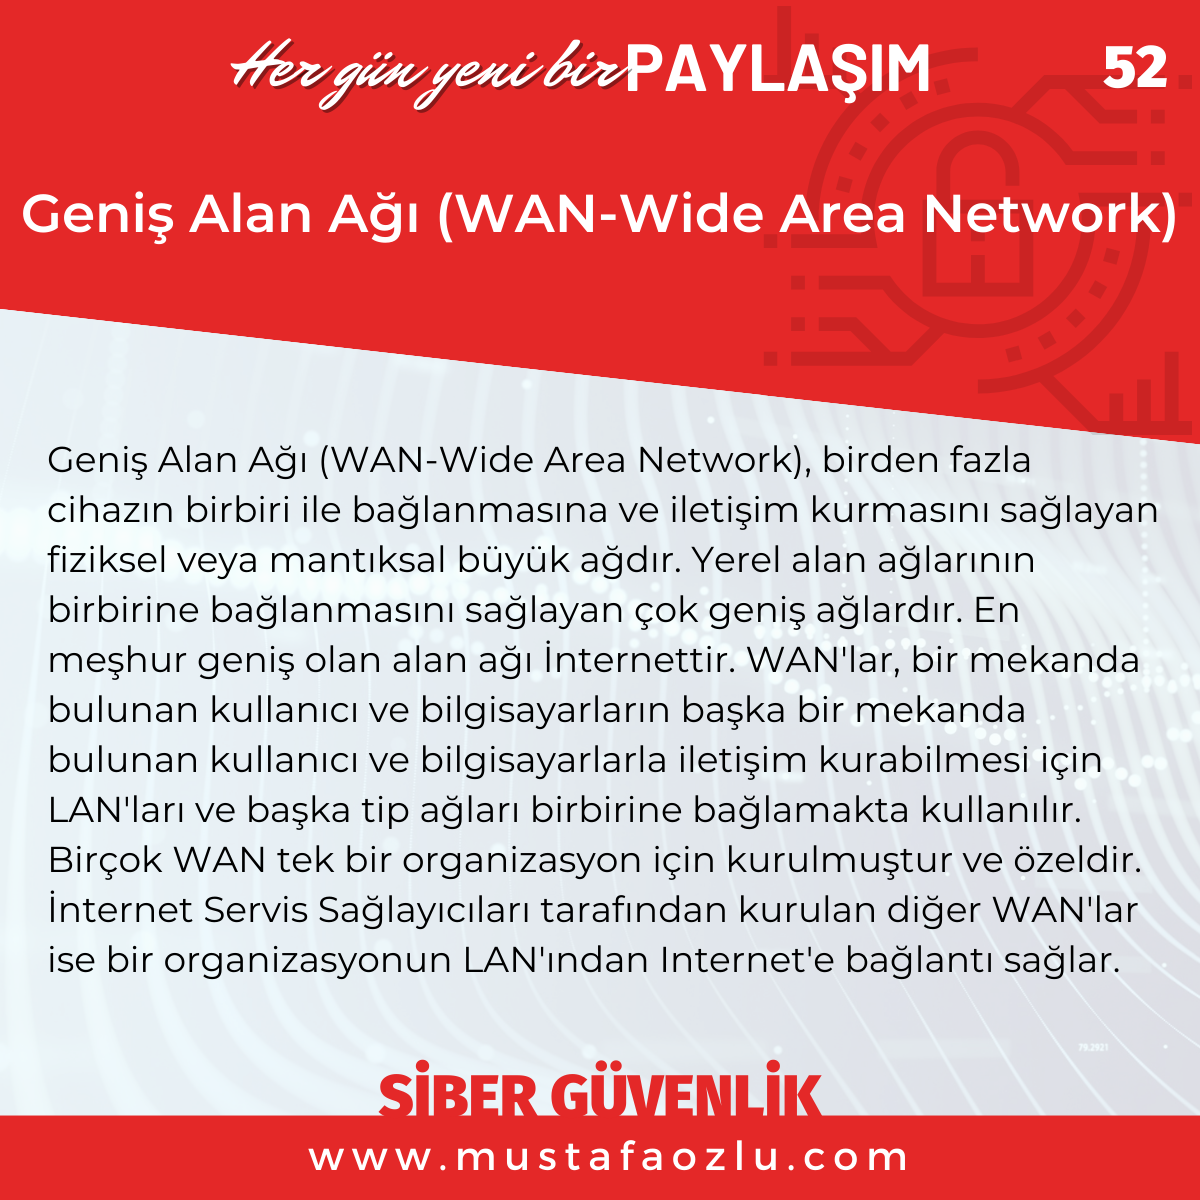 Geniş Alan Ağı (WAN-Wide Area Network) - Mustafa ÖZLÜ